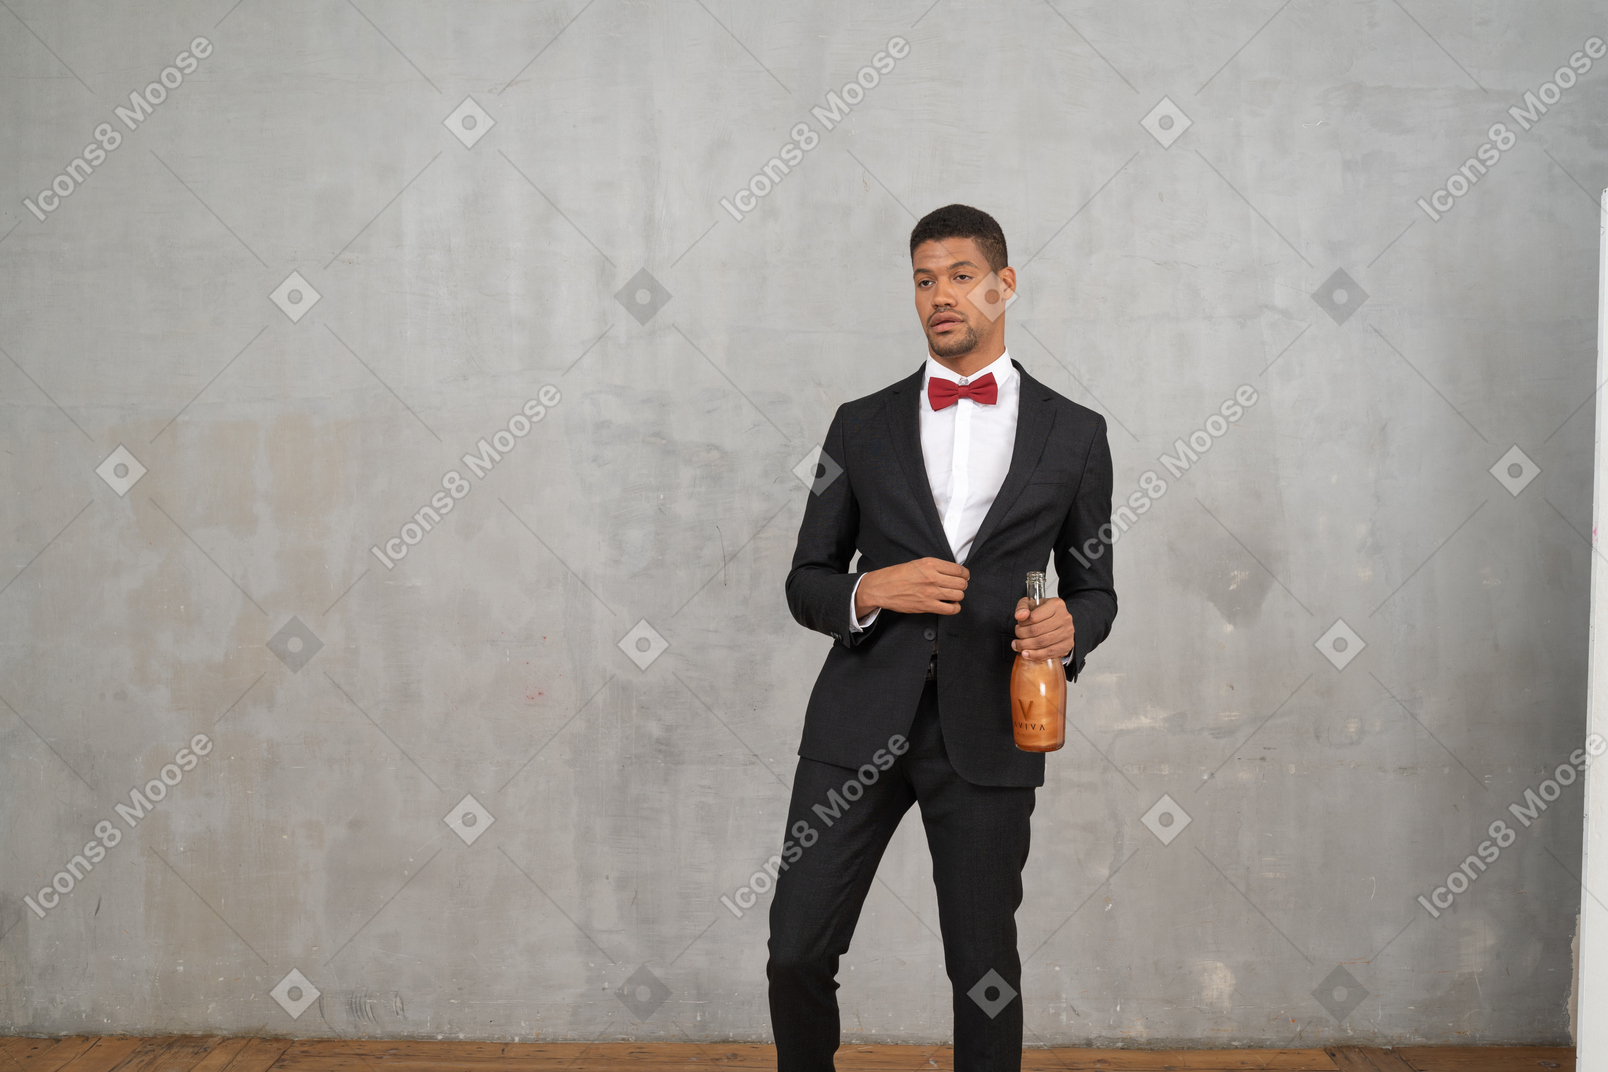 Homem com roupa formal cambaleando com uma garrafa na mão